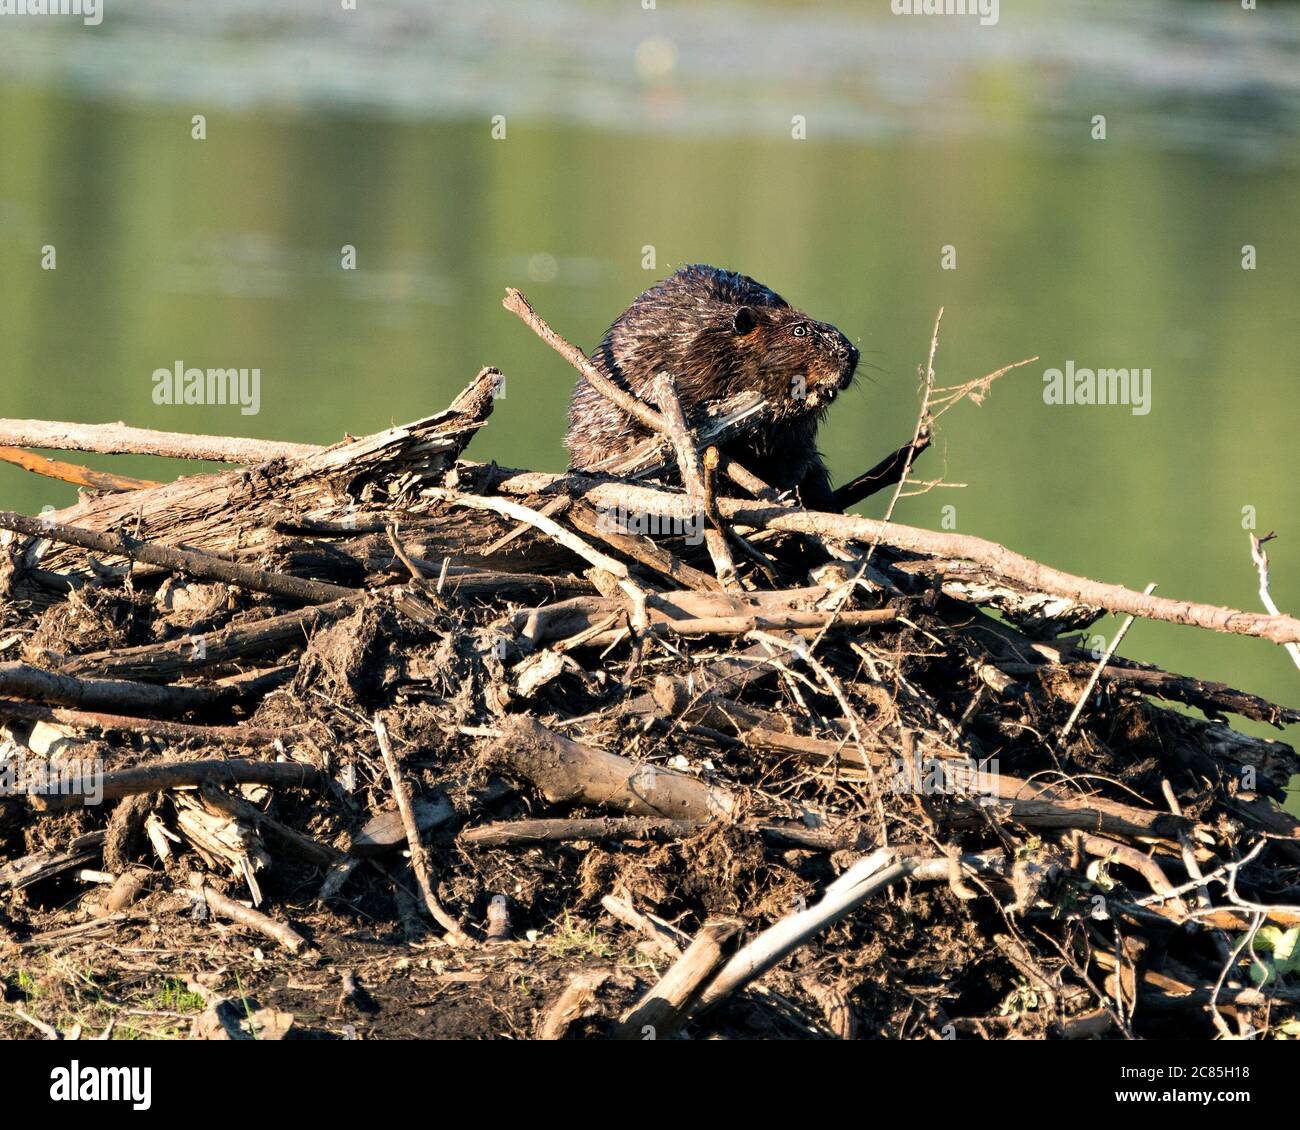 Biber Nahaufnahme Profilansicht Bau einer Biberlodge, zeigt seine braunen Fell, Arbeitsfertigkeit in seinem Lebensraum und Umgebung mit einem Wasser Hintergrund. Stockfoto